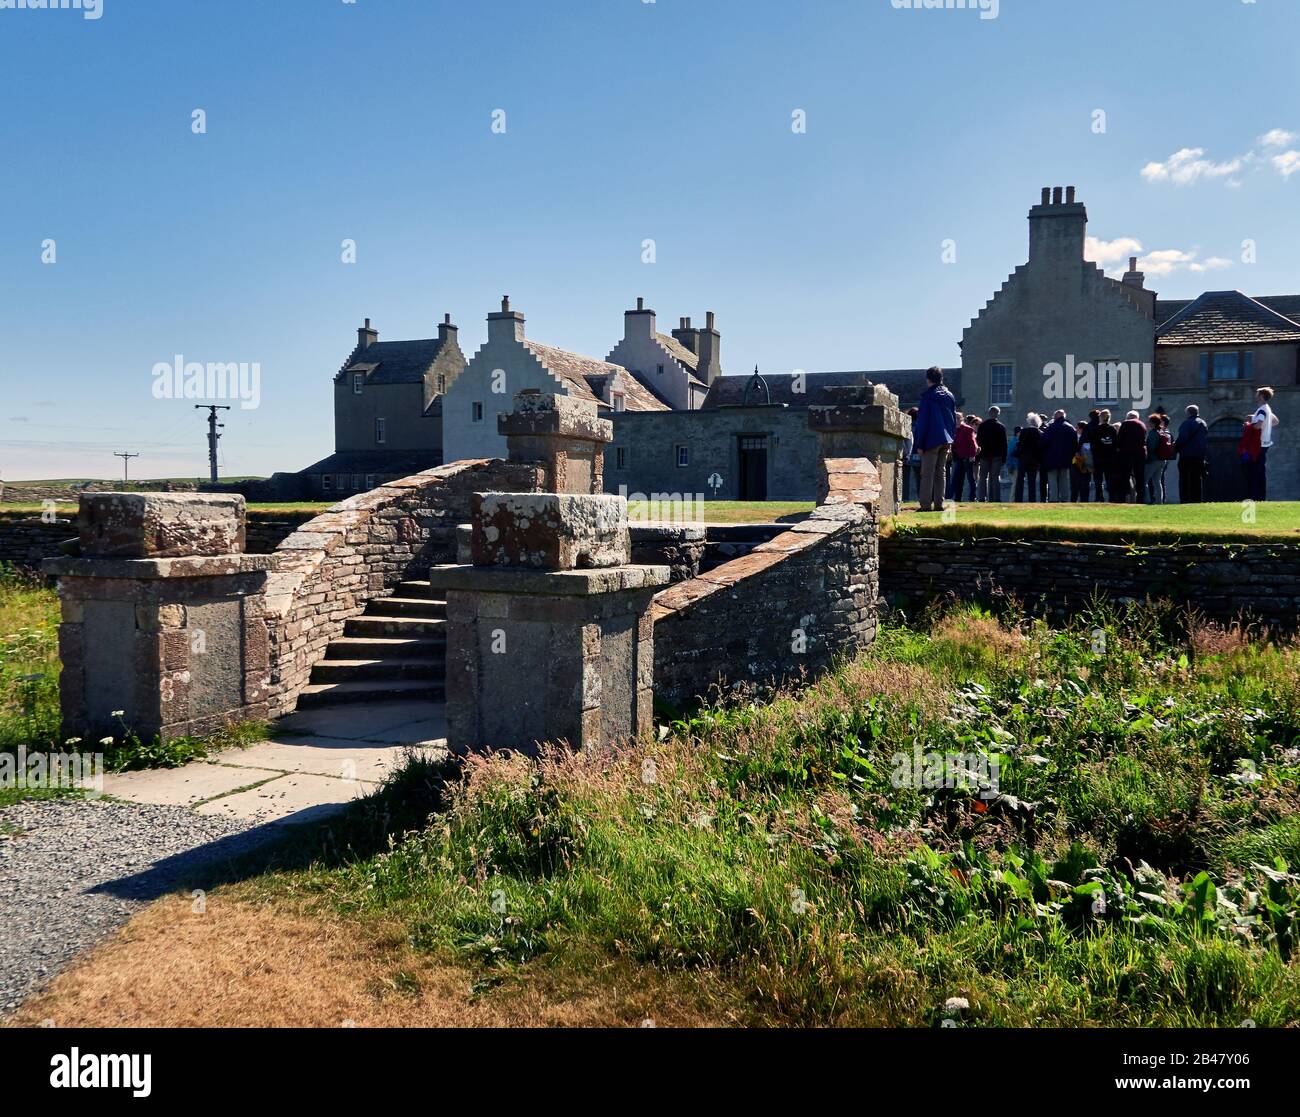 Reino Unido, Escocia, Islas Orkney es un archipiélago en las Islas del Norte de Escocia, , Océano Atlántico, la mansión de la casa de los skaill, construida por un obispo en 1620, la histórica Casa Skaill está situada en Mainland, la más grande de las Islas Orkney, Foto de stock